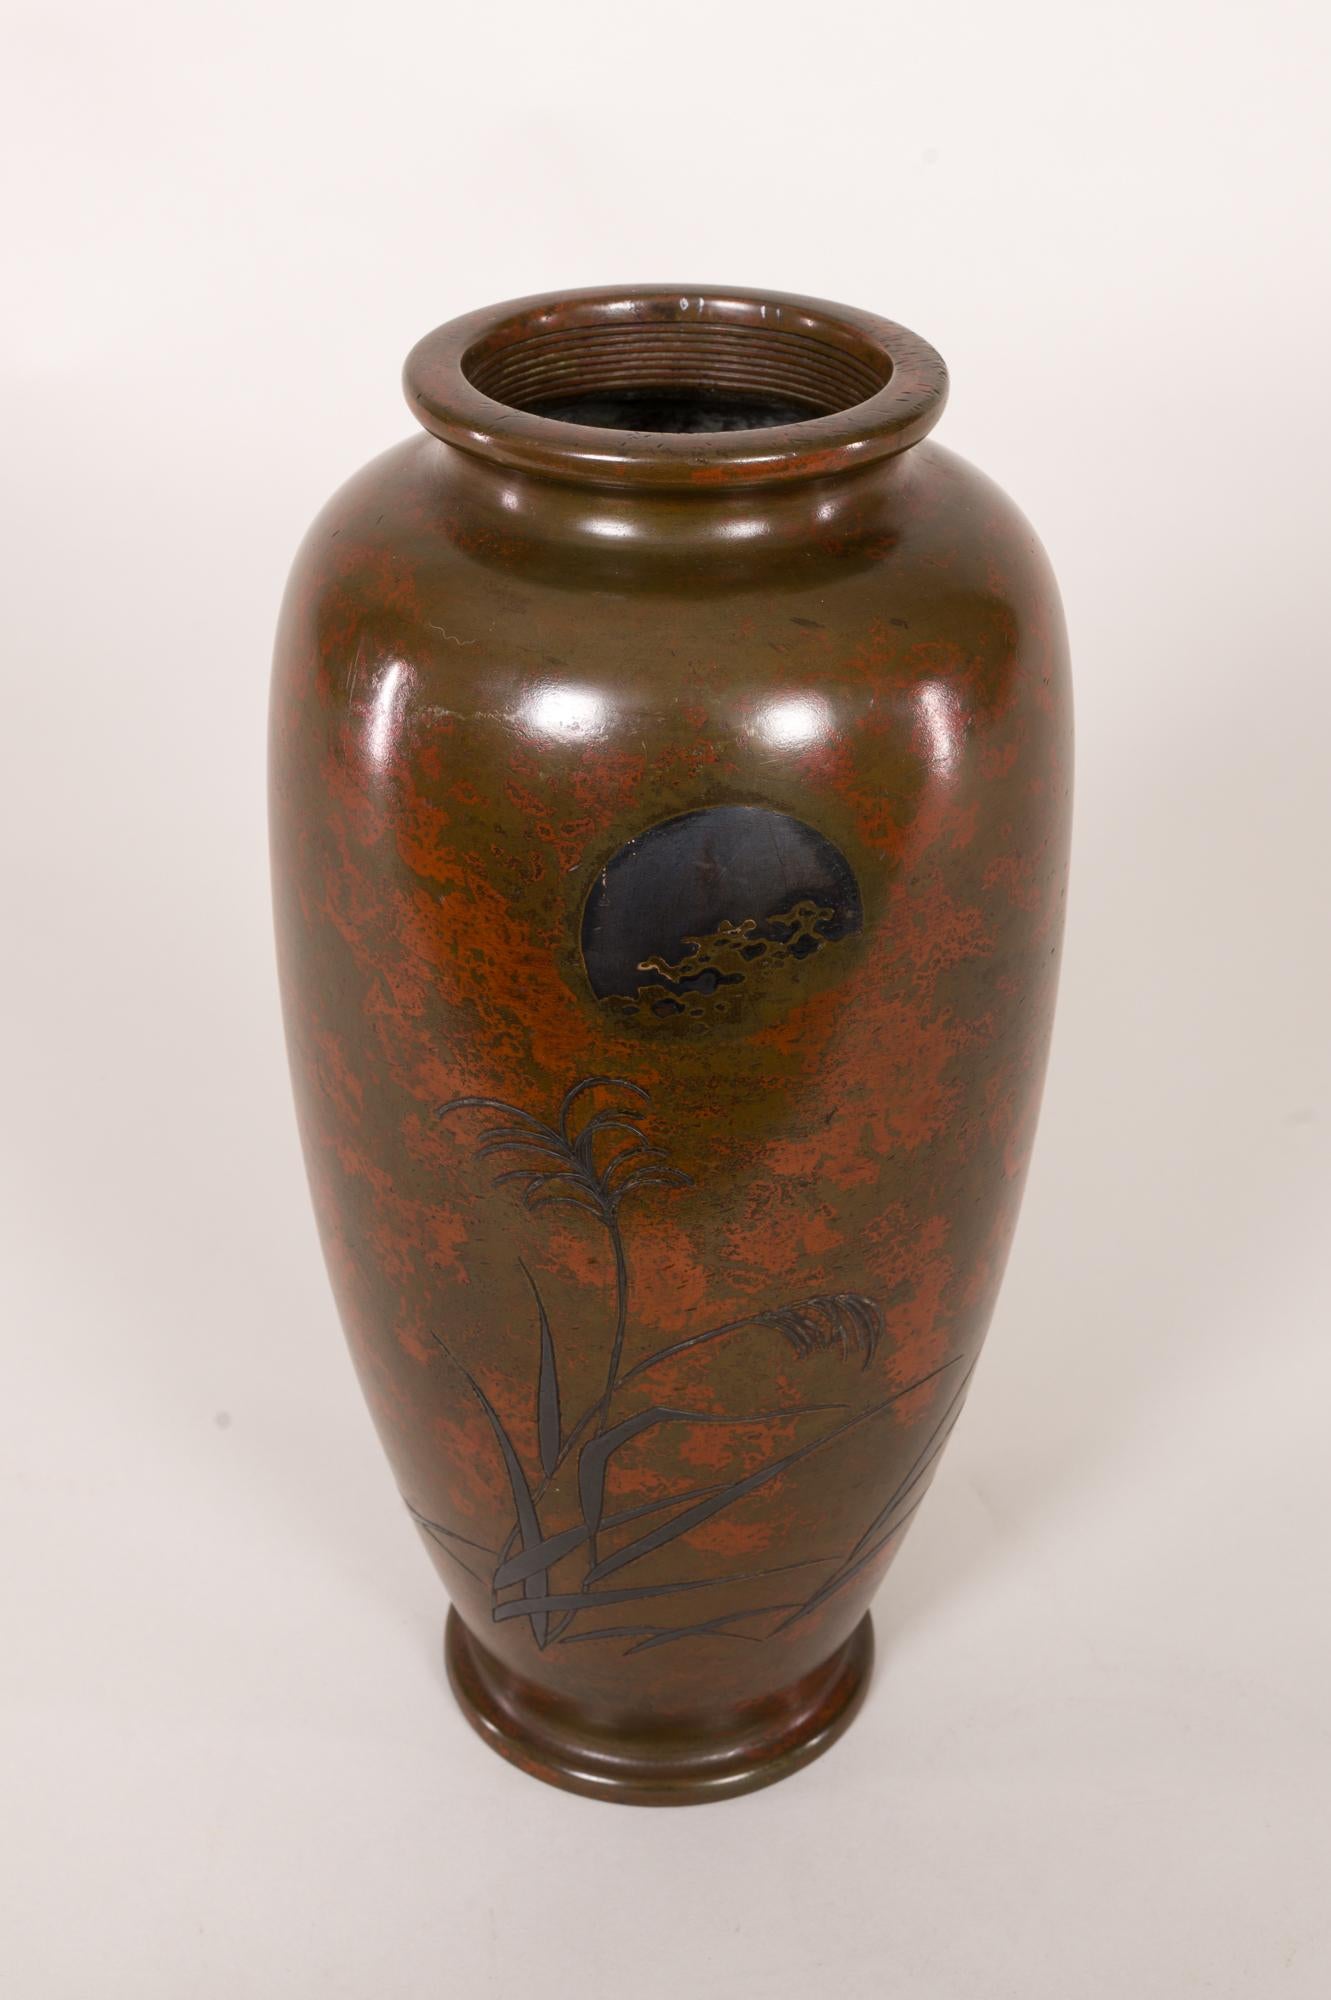 Vase japonais ancien en bronze avec paysage et patine rouge. Vase en bronze de la période Meiji (1868-1912) avec des herbes sauvages sous une lune argentée. Une sous-couleur rouge est exposée dans tout le vase, représentant les nuages. Le sceau de